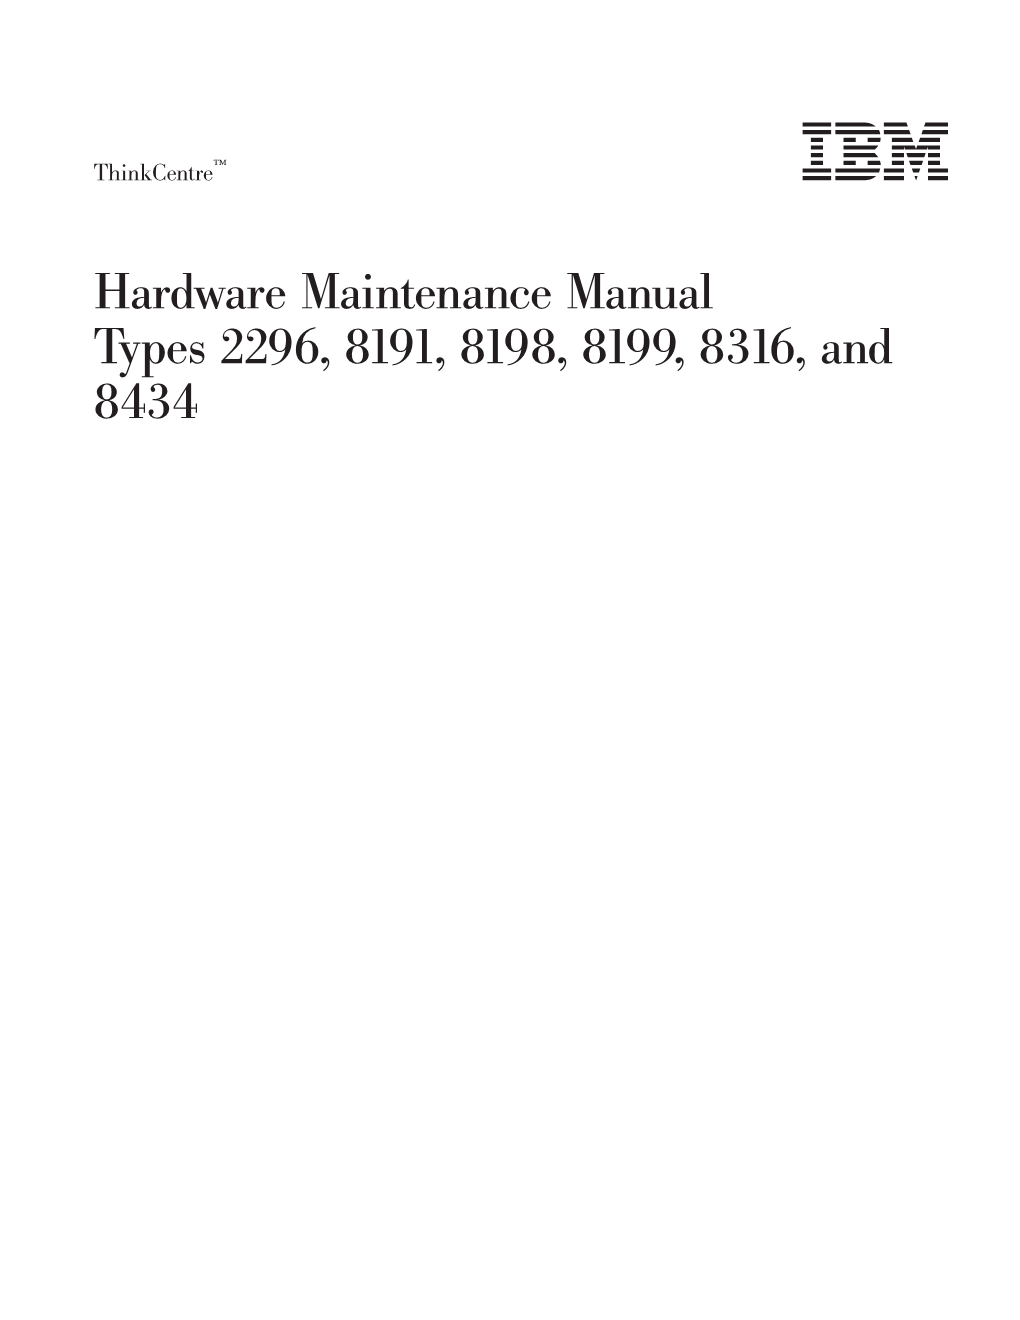 Hardware Maintenance Manual Types 2296, 8191, 8198, 8199